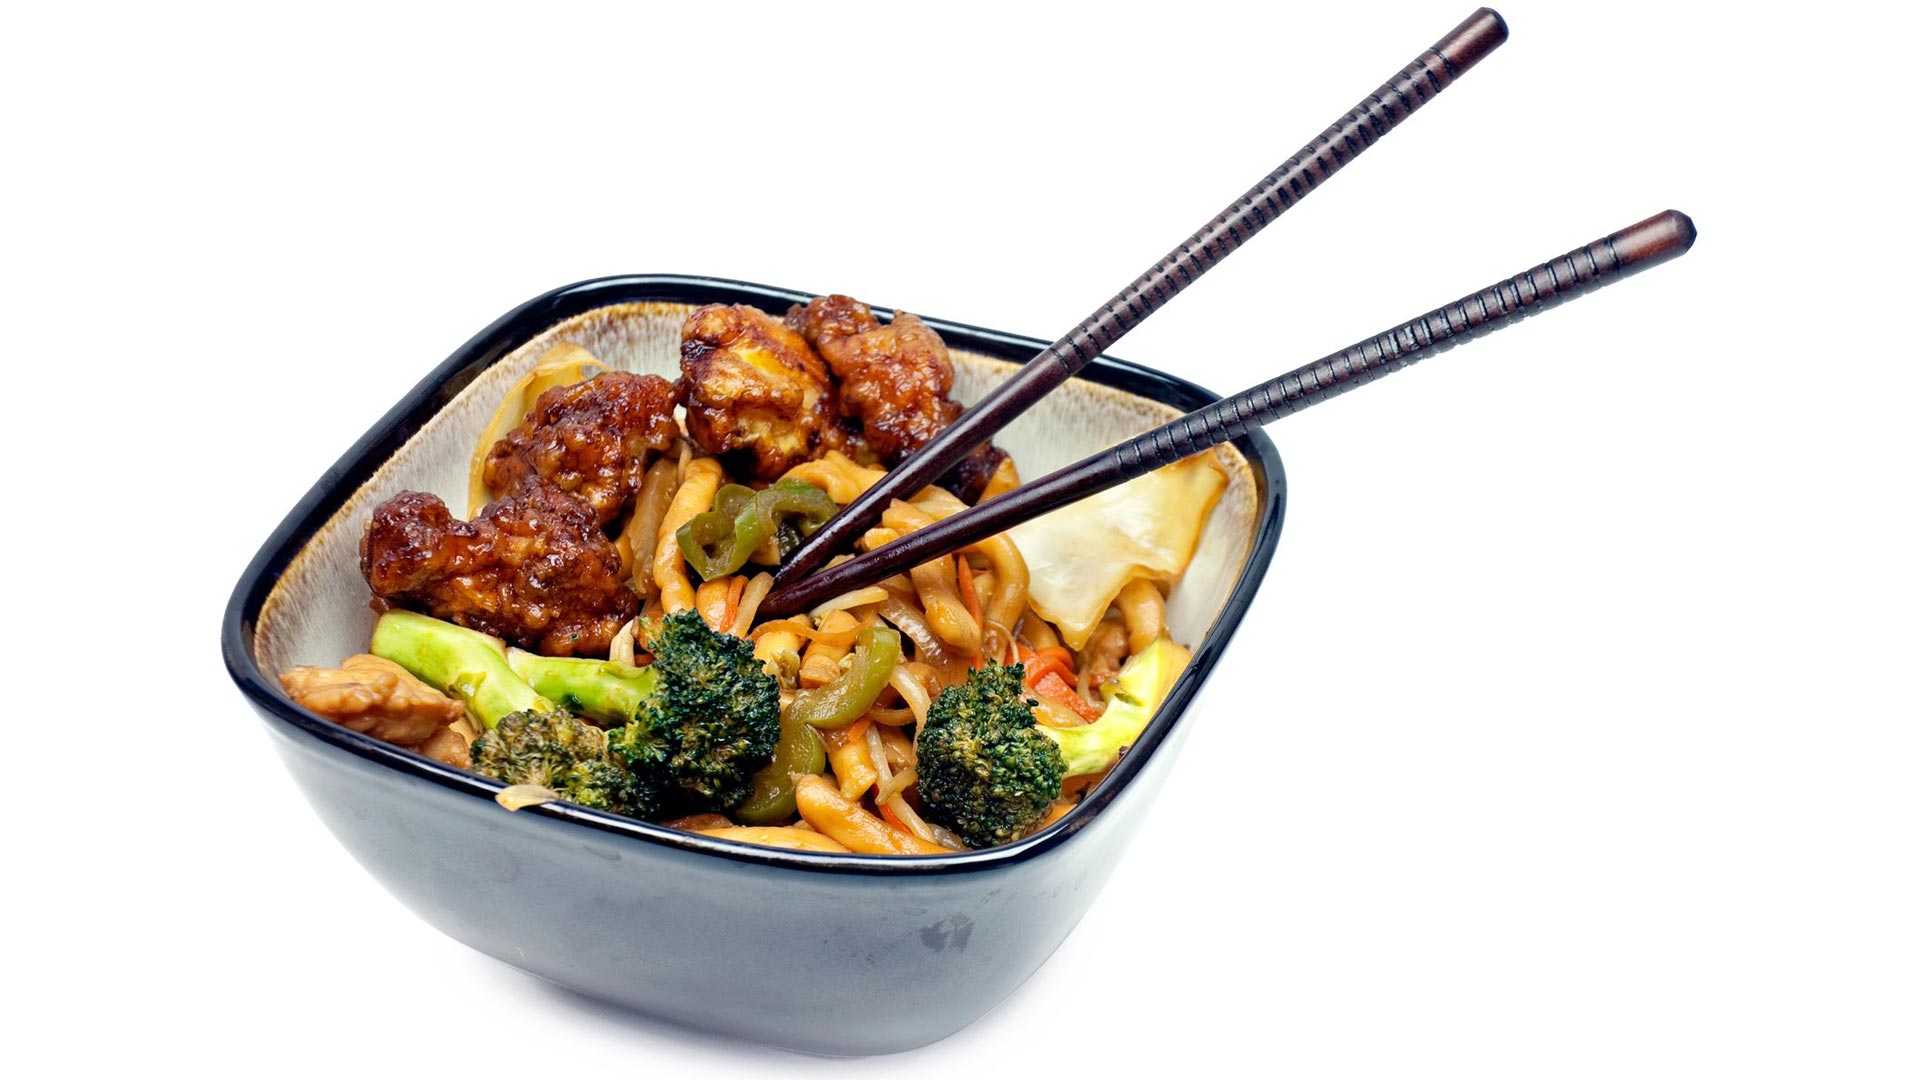 Kiinalainen ravintolaruoka on pullollaan glutamaattia, joka saattaa herkistää migreenille.